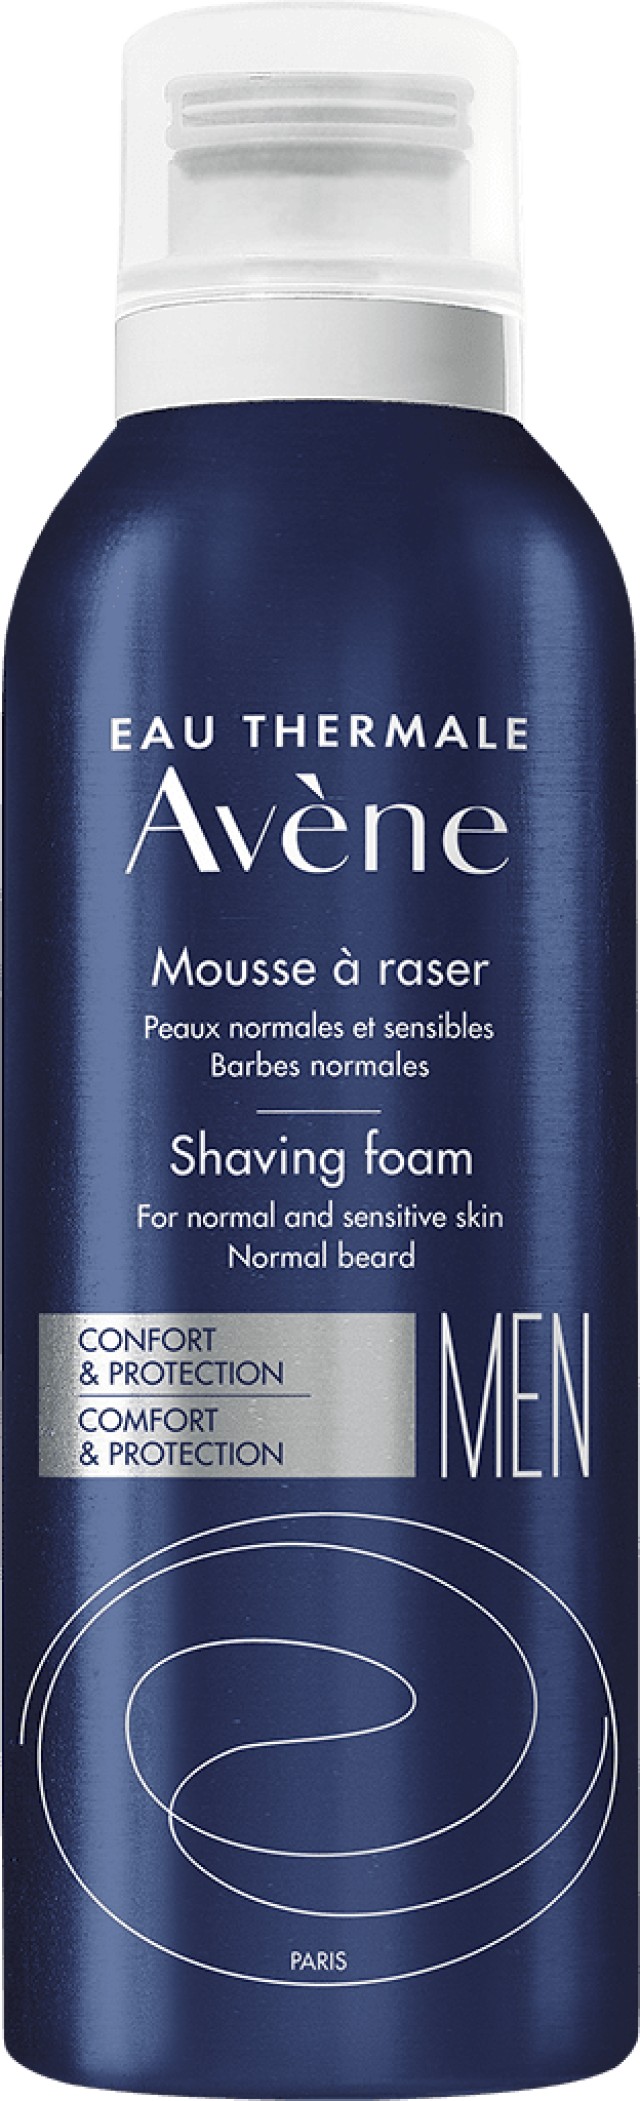 Avene Men Mousse a Raser Shaving Foam Αφρός Ξυρίσματος για Άνδρες 200ml